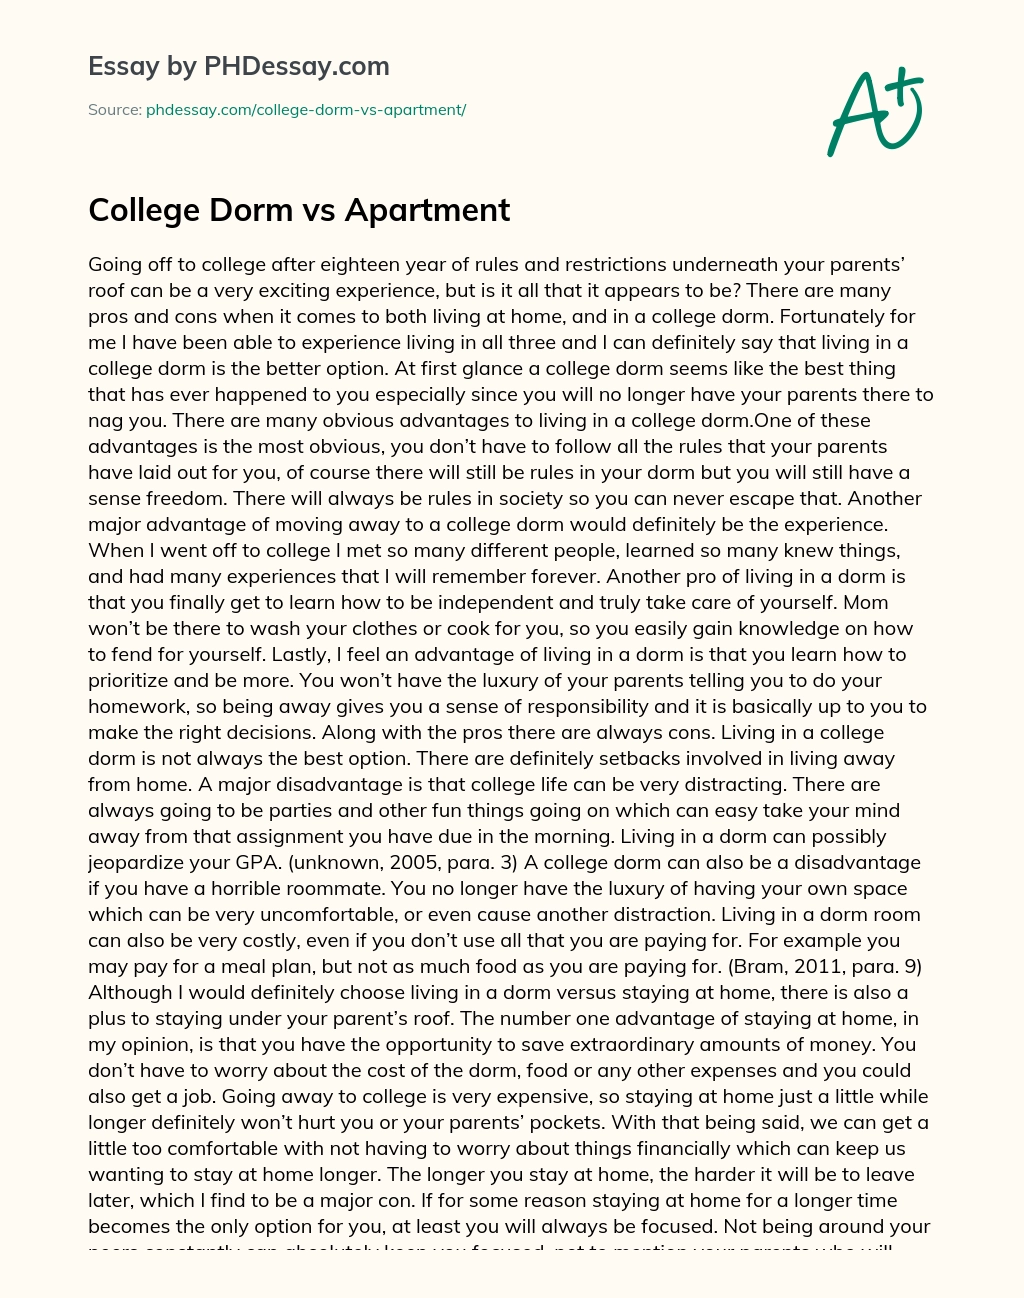 College Dorm vs Apartment essay